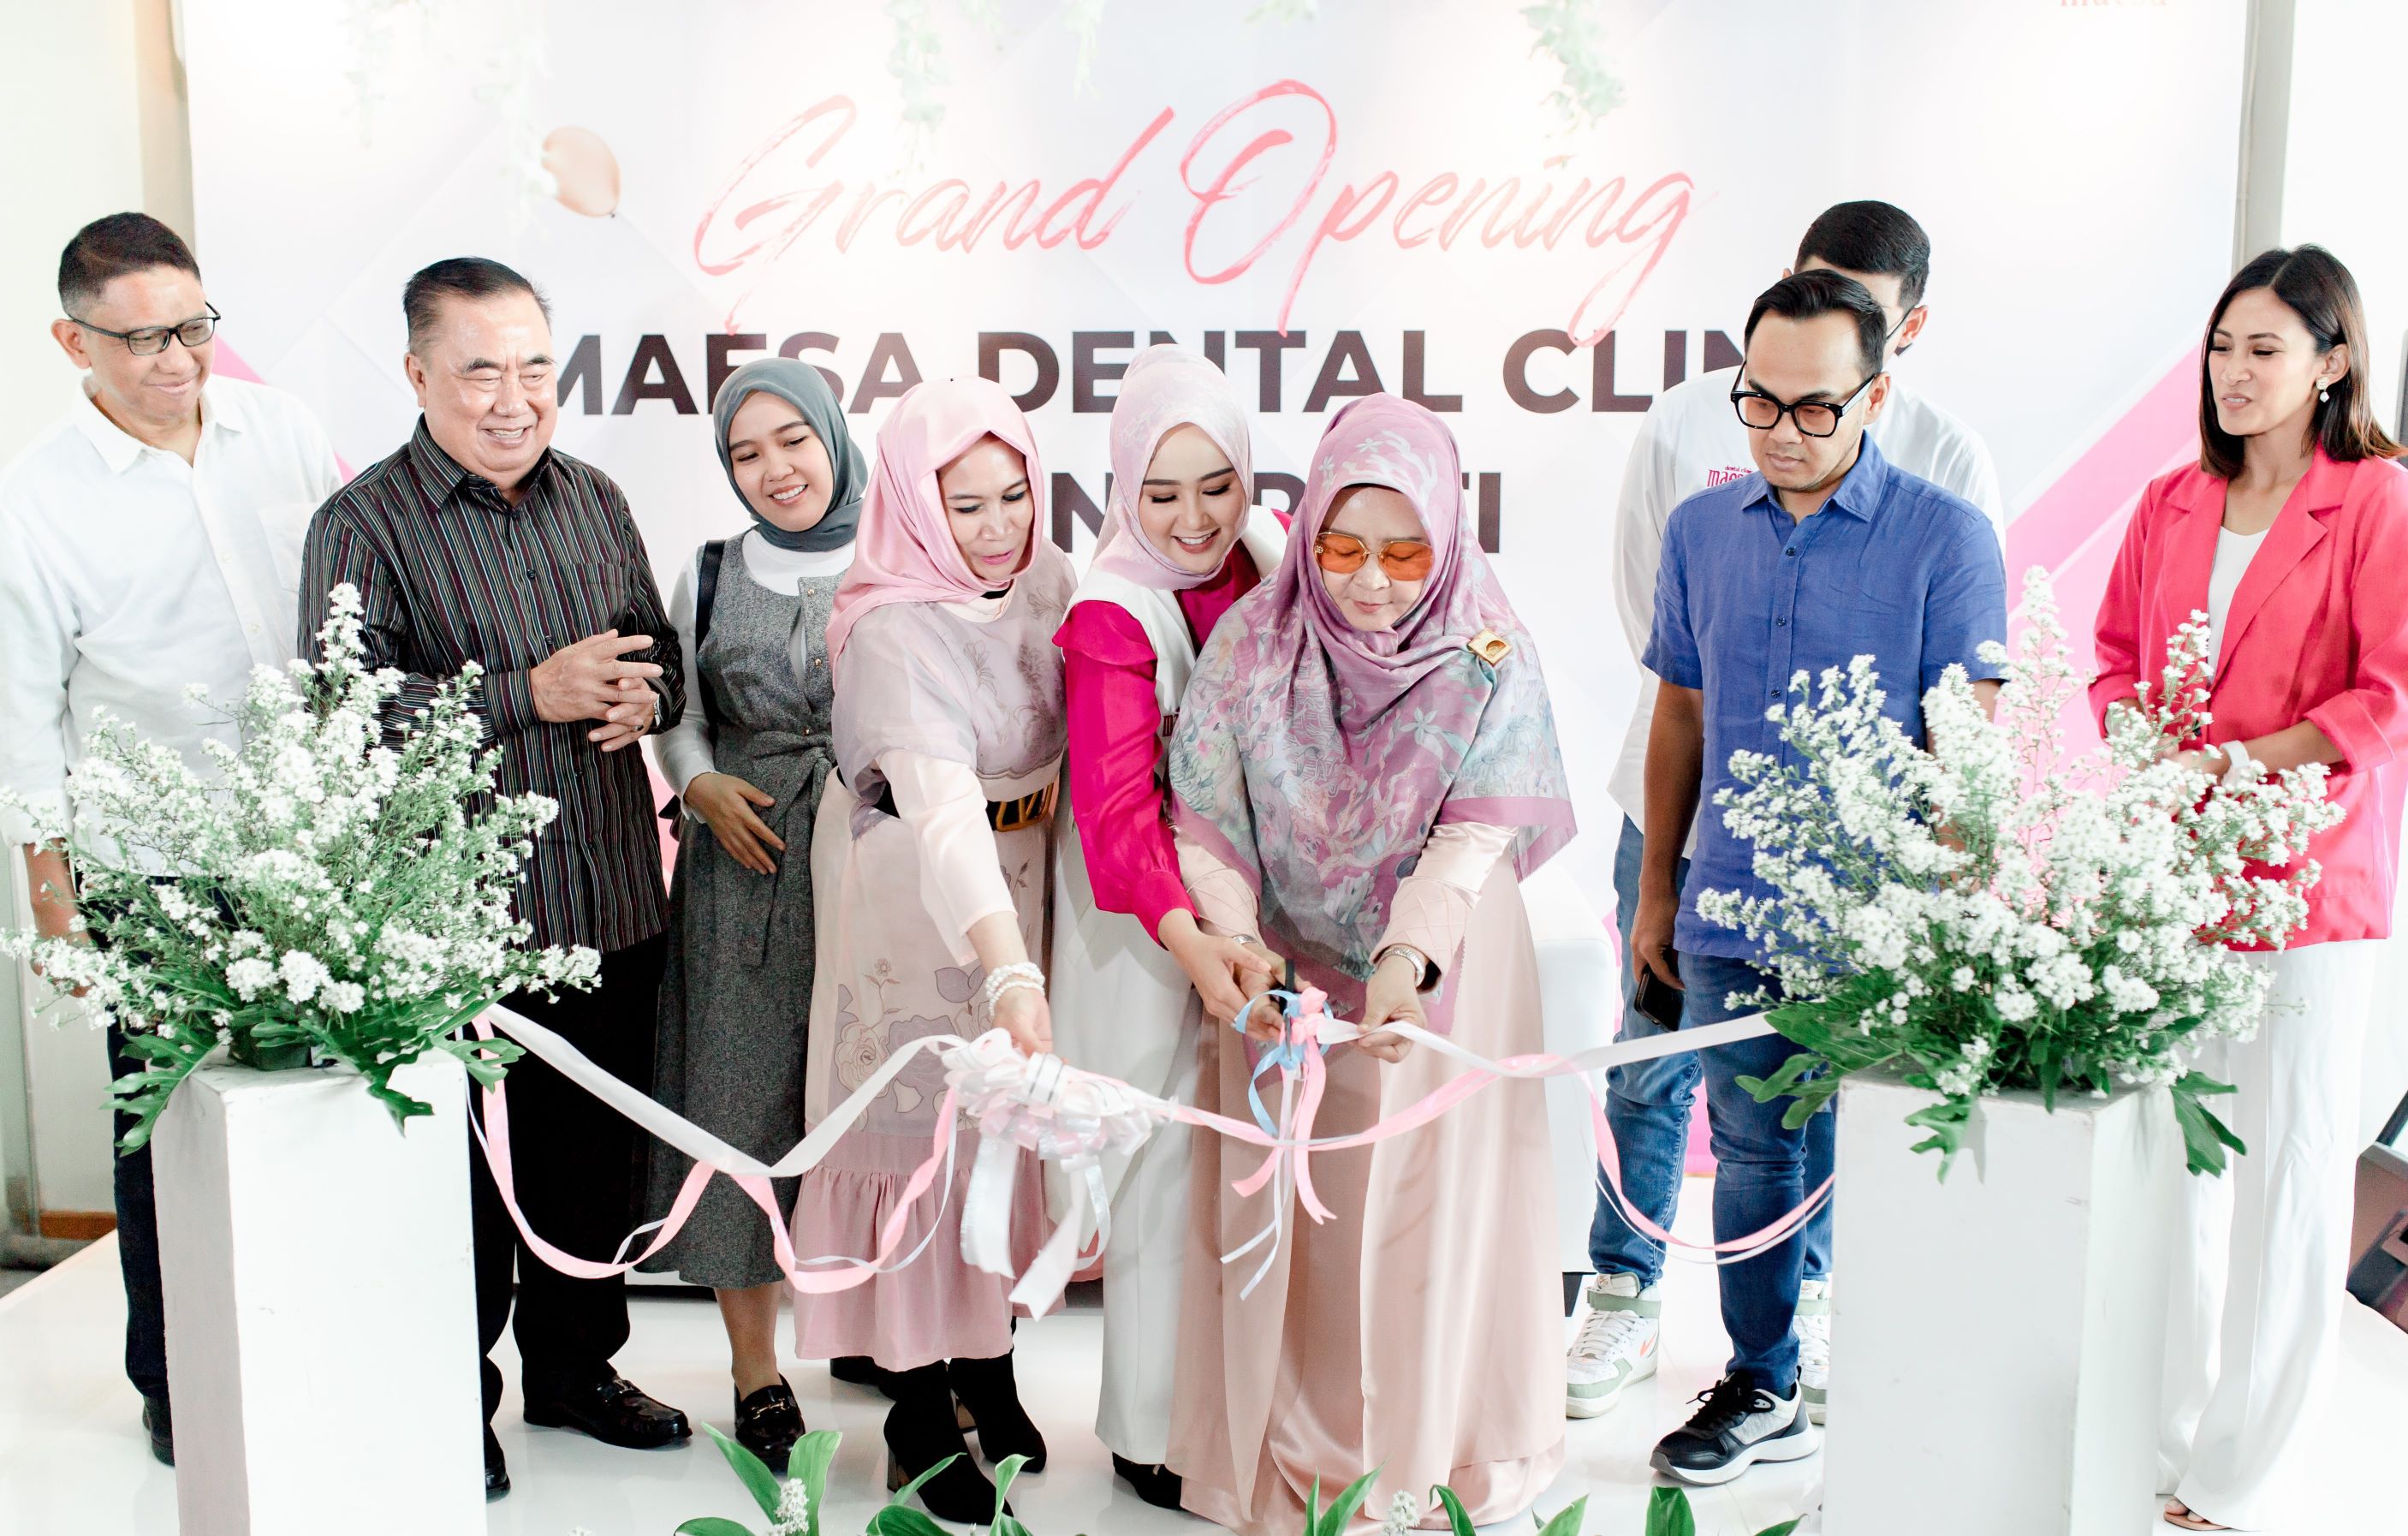 Maesa Dental Clinic Buka Cabang ke-3